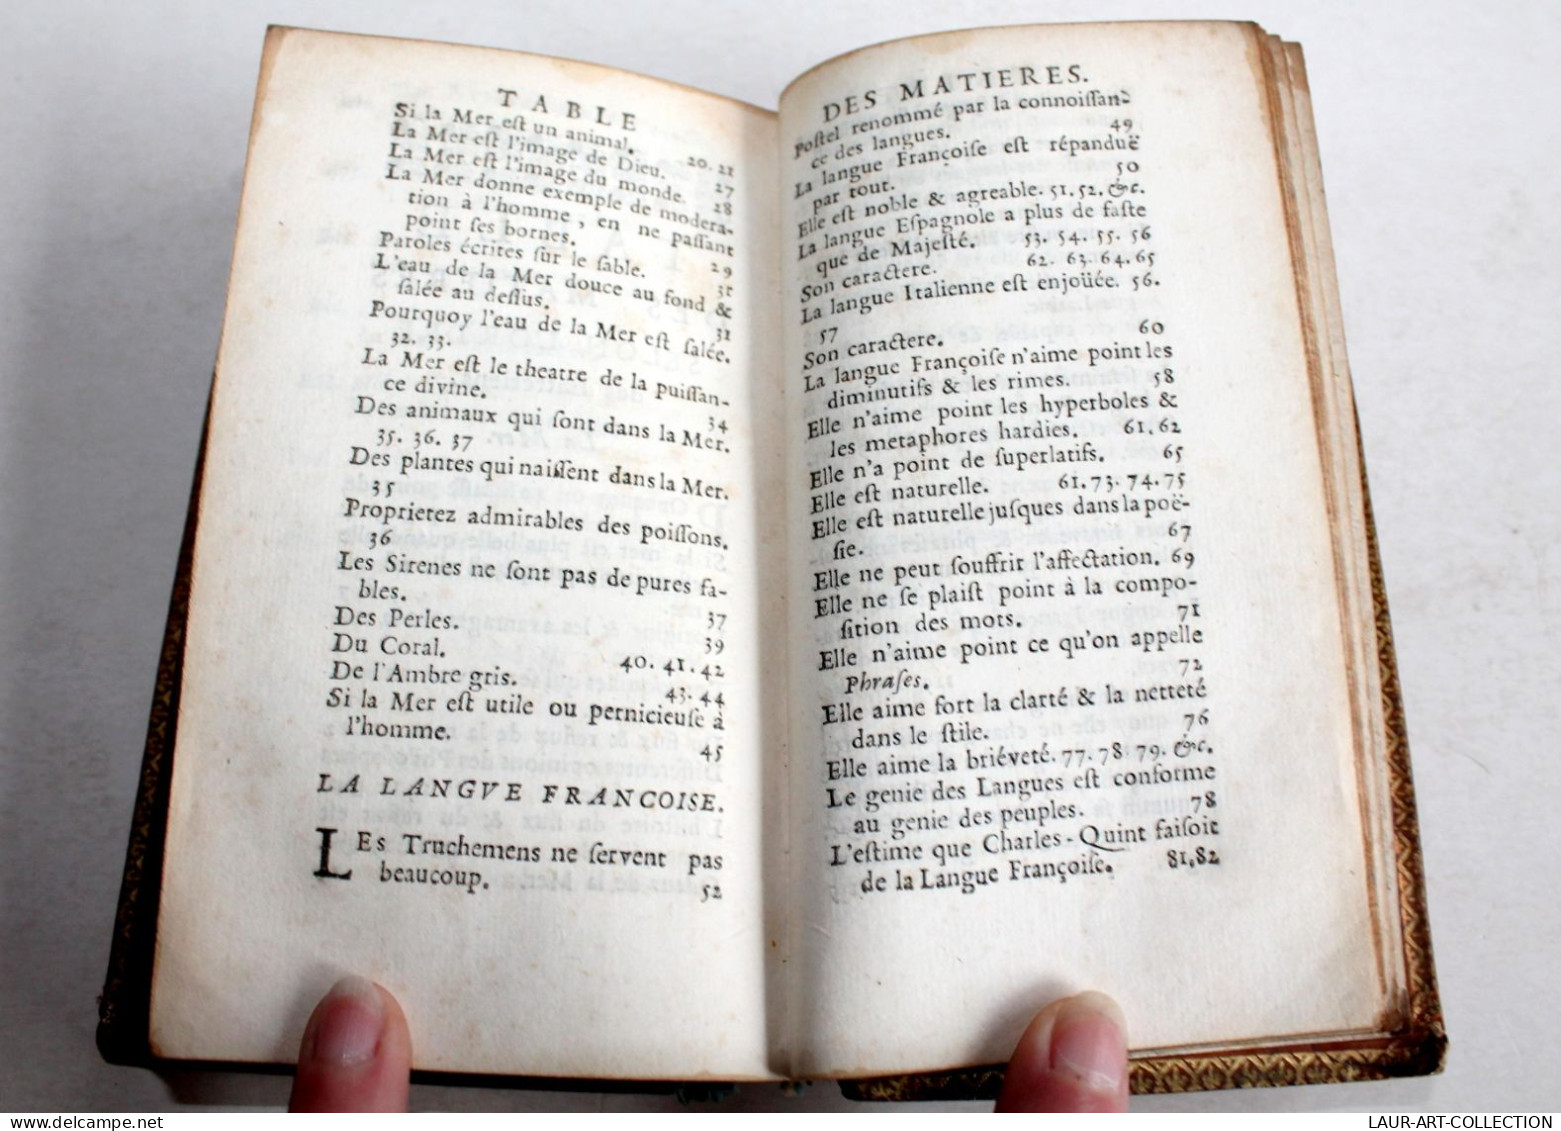 LES ENTRETIENS D'ARISTE & D'EUGENE 4e EDITION OU MOTS DES DEVISES, BOUHOURS 1673, LIVRE XVIIe SIECLE (2204.117)